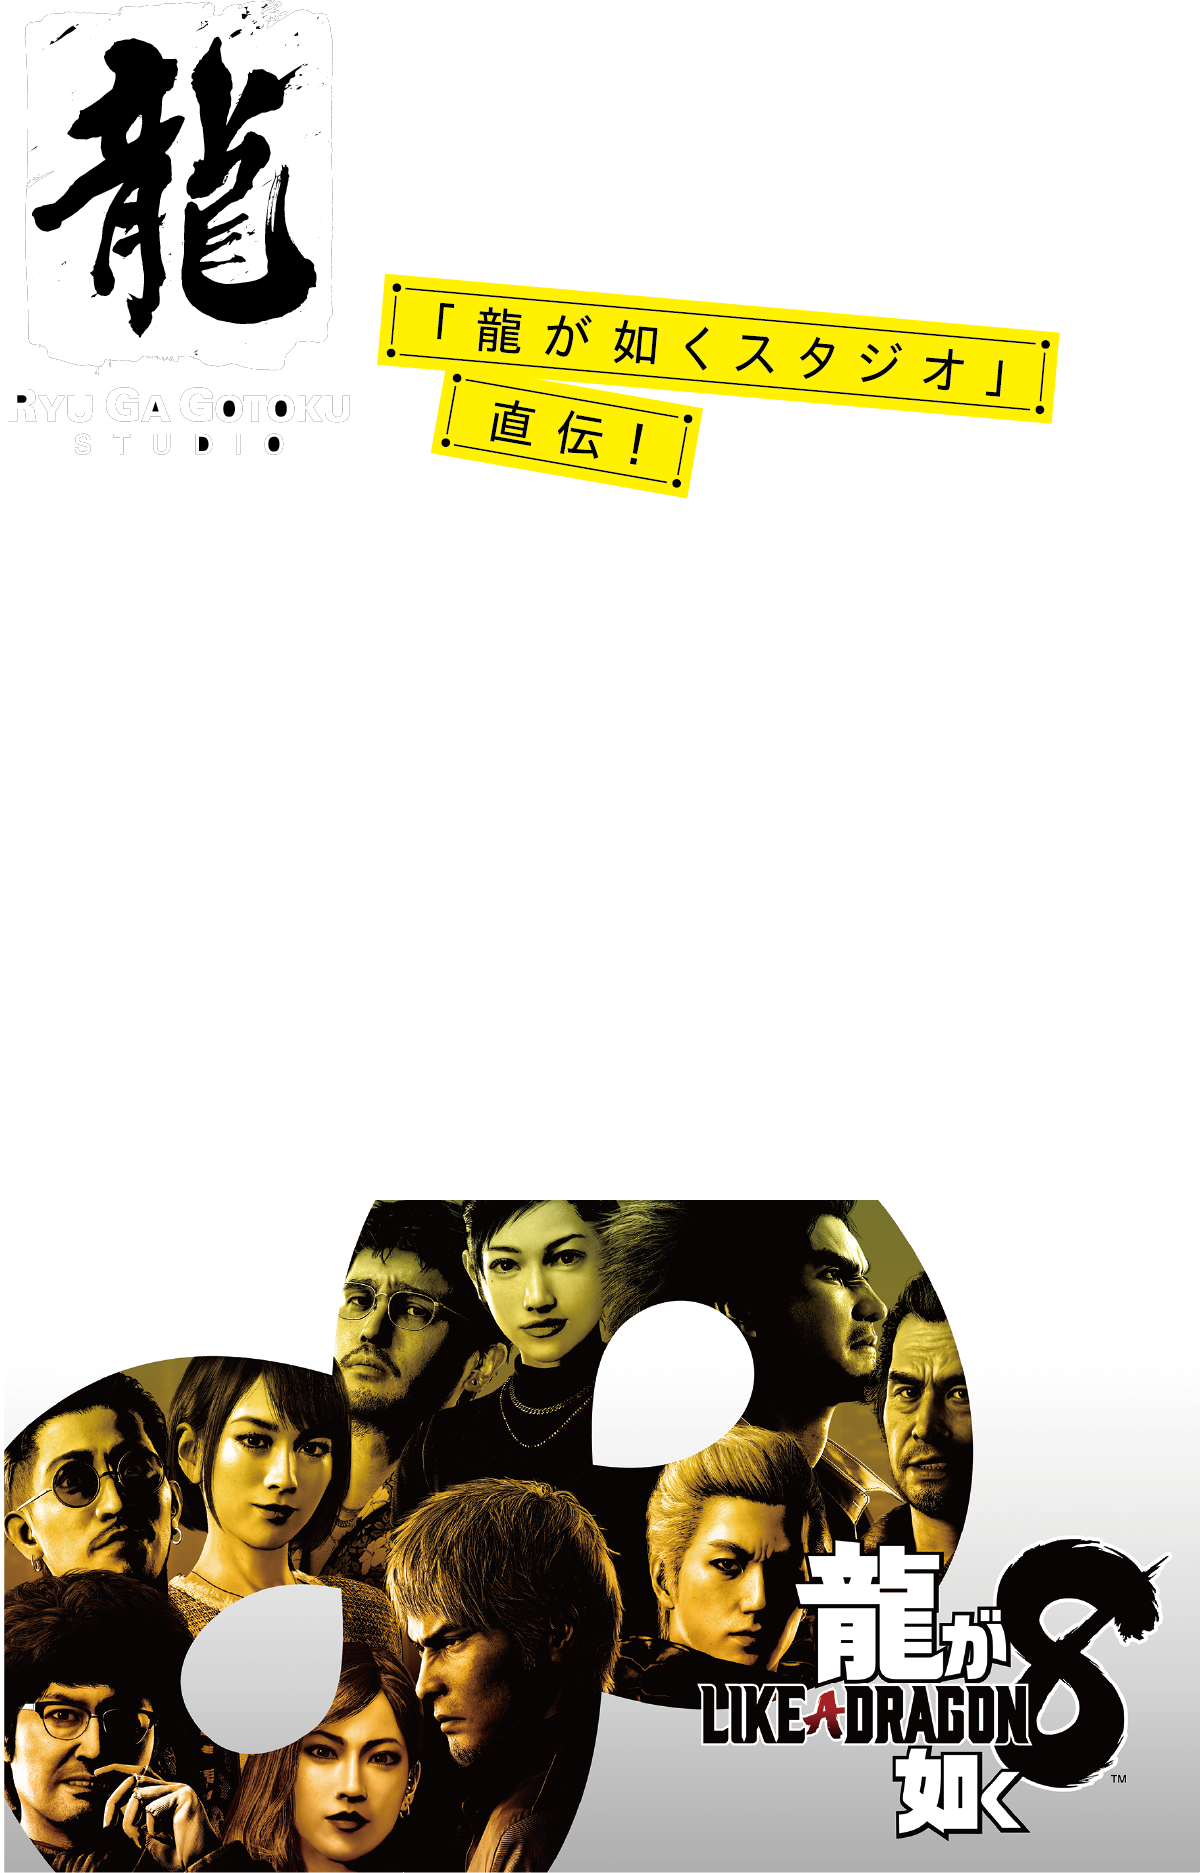 「フォトリアルの先」を目指す3Dモデル作り Adobe Substance ３D のテクスチャ作成